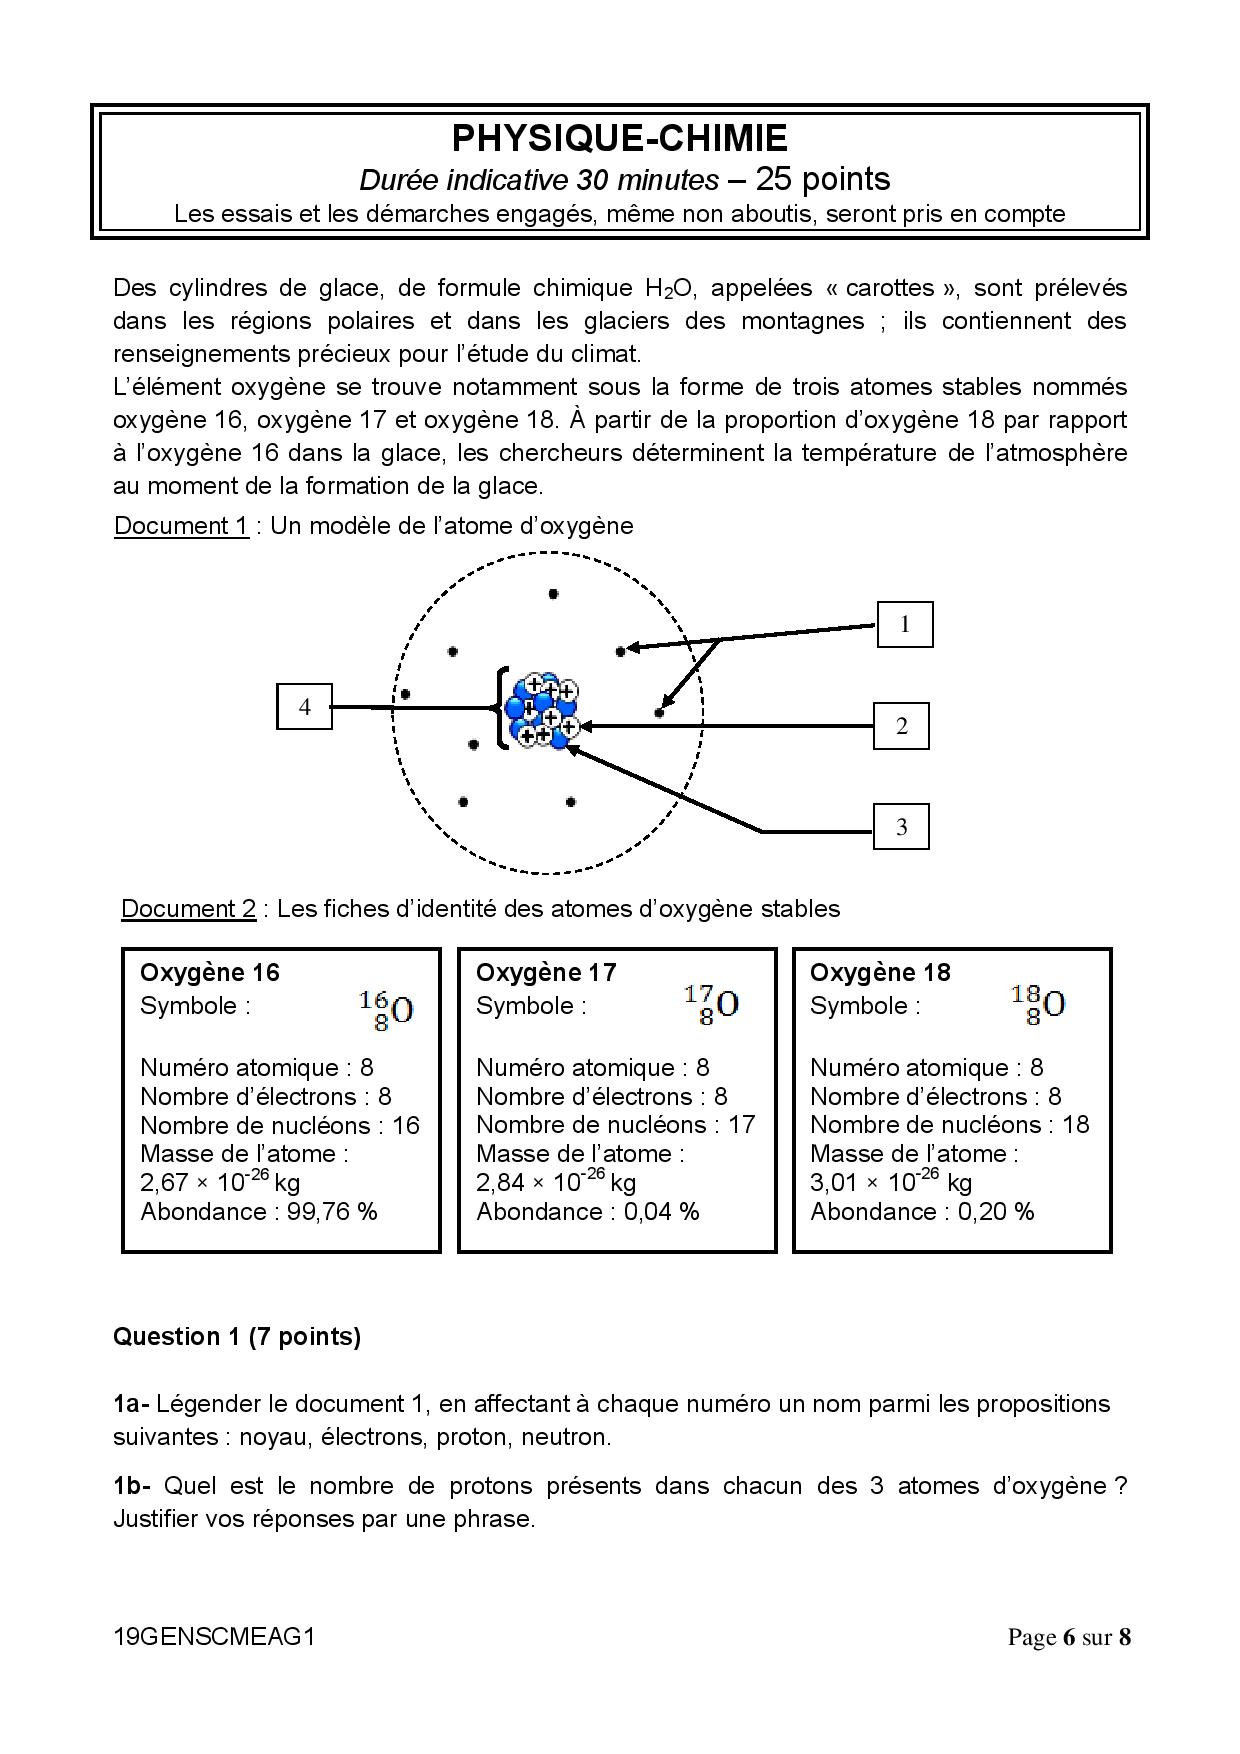 Sujet Brevet Maths Pdf Avec Corrigé Corrigé brevet 2019 physique chimie - Atomes d'oxygène